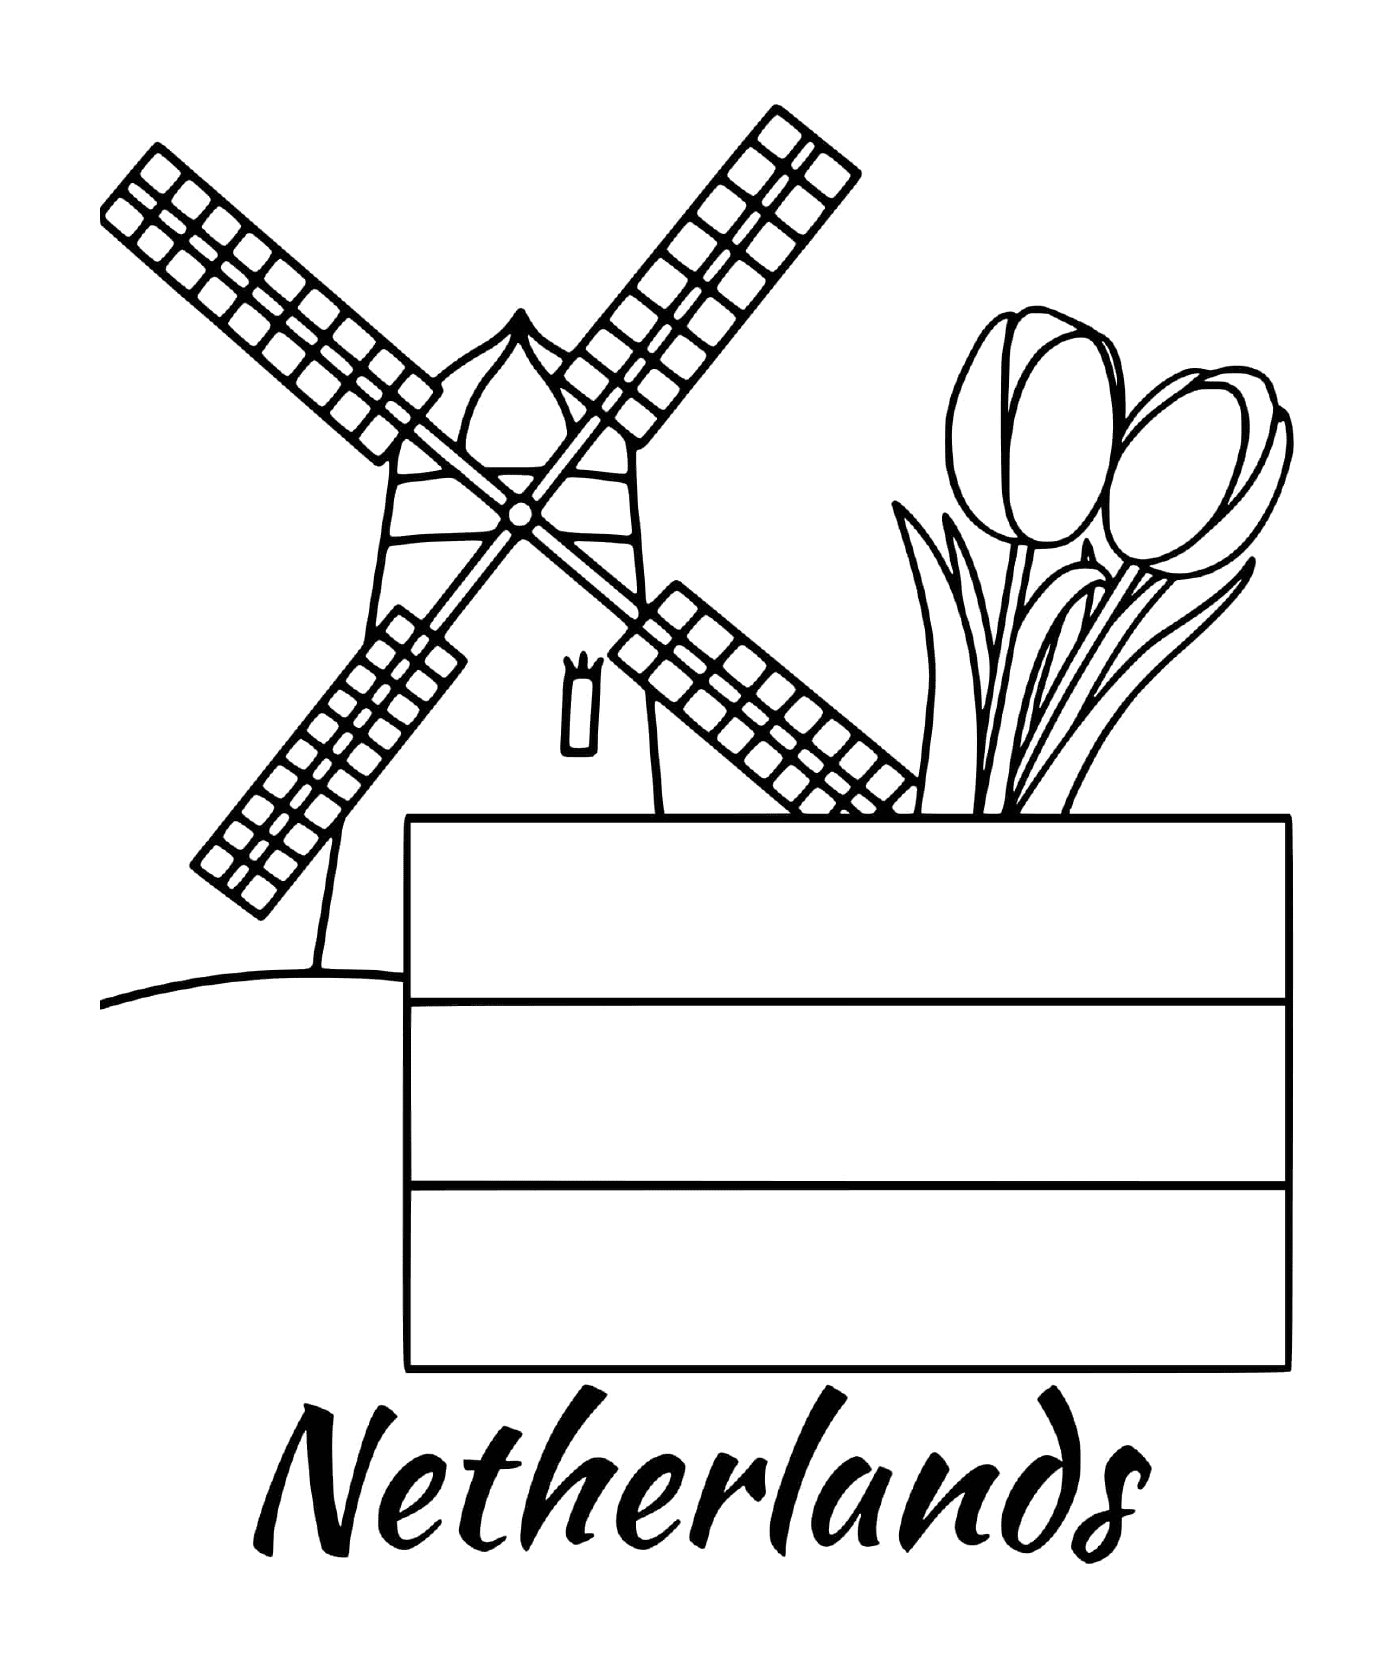  Bandera holandesa con molino de viento 